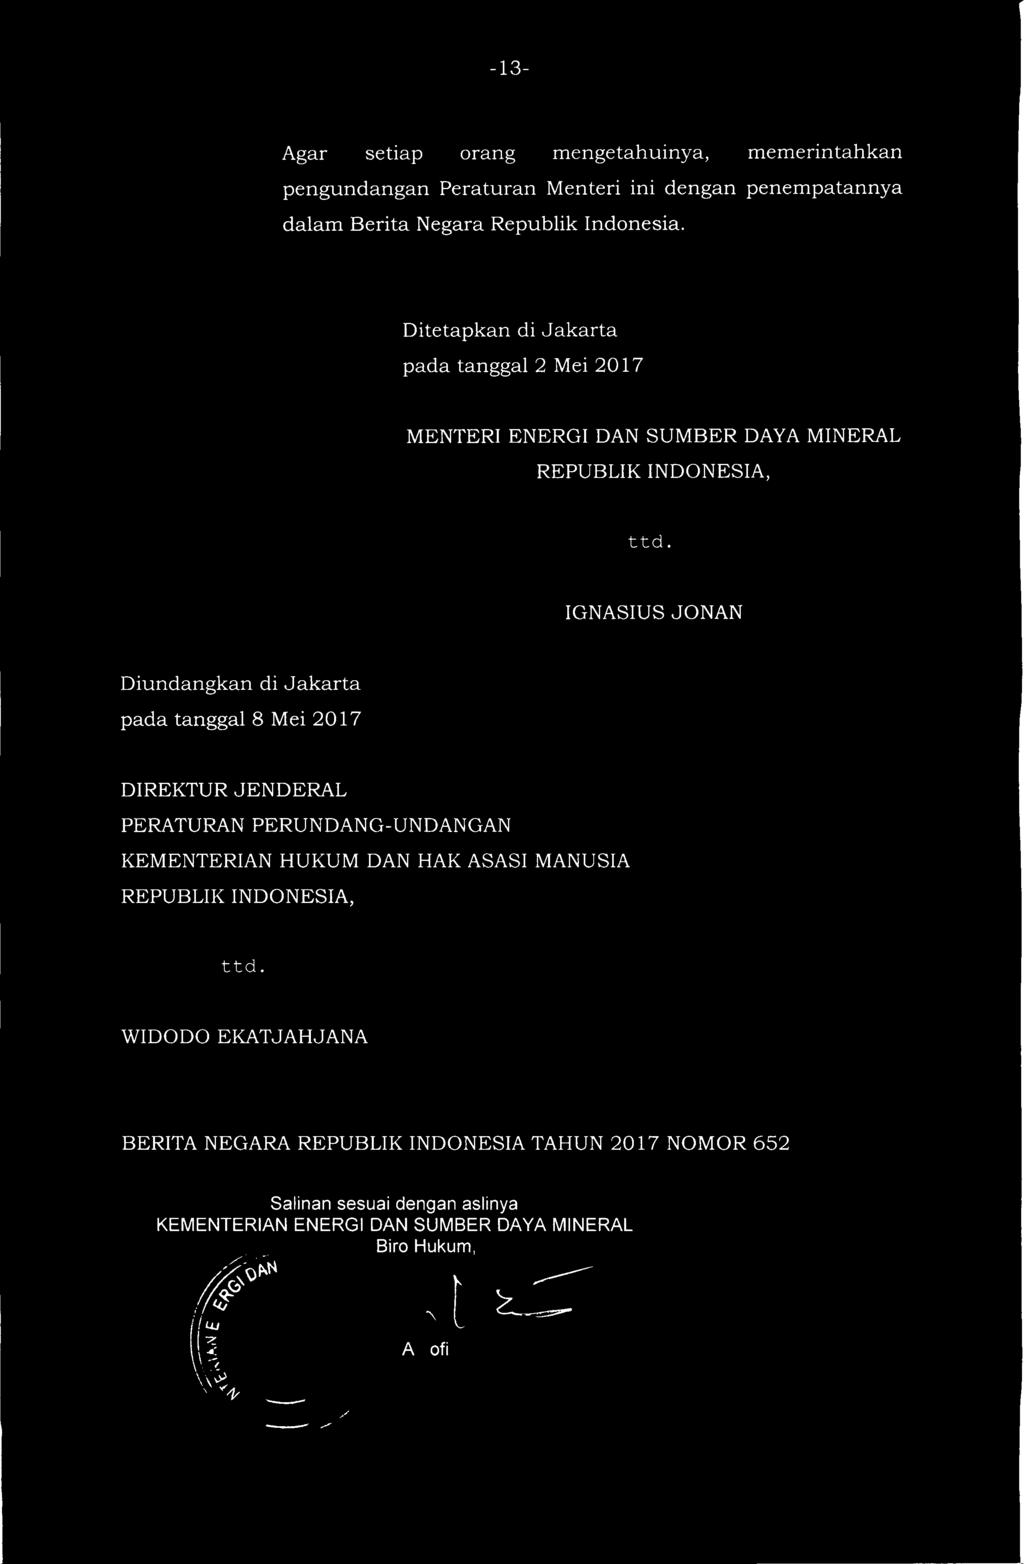 IGNASIUS JONAN Diundangkan di Jakarta pada tanggal 8 Mei 2017 DIREKTUR JENDERAL PERATURAN PERUNDANG-UNDANGAN KEMENTERIAN HUKUM DAN HAK ASASI MANUSIA